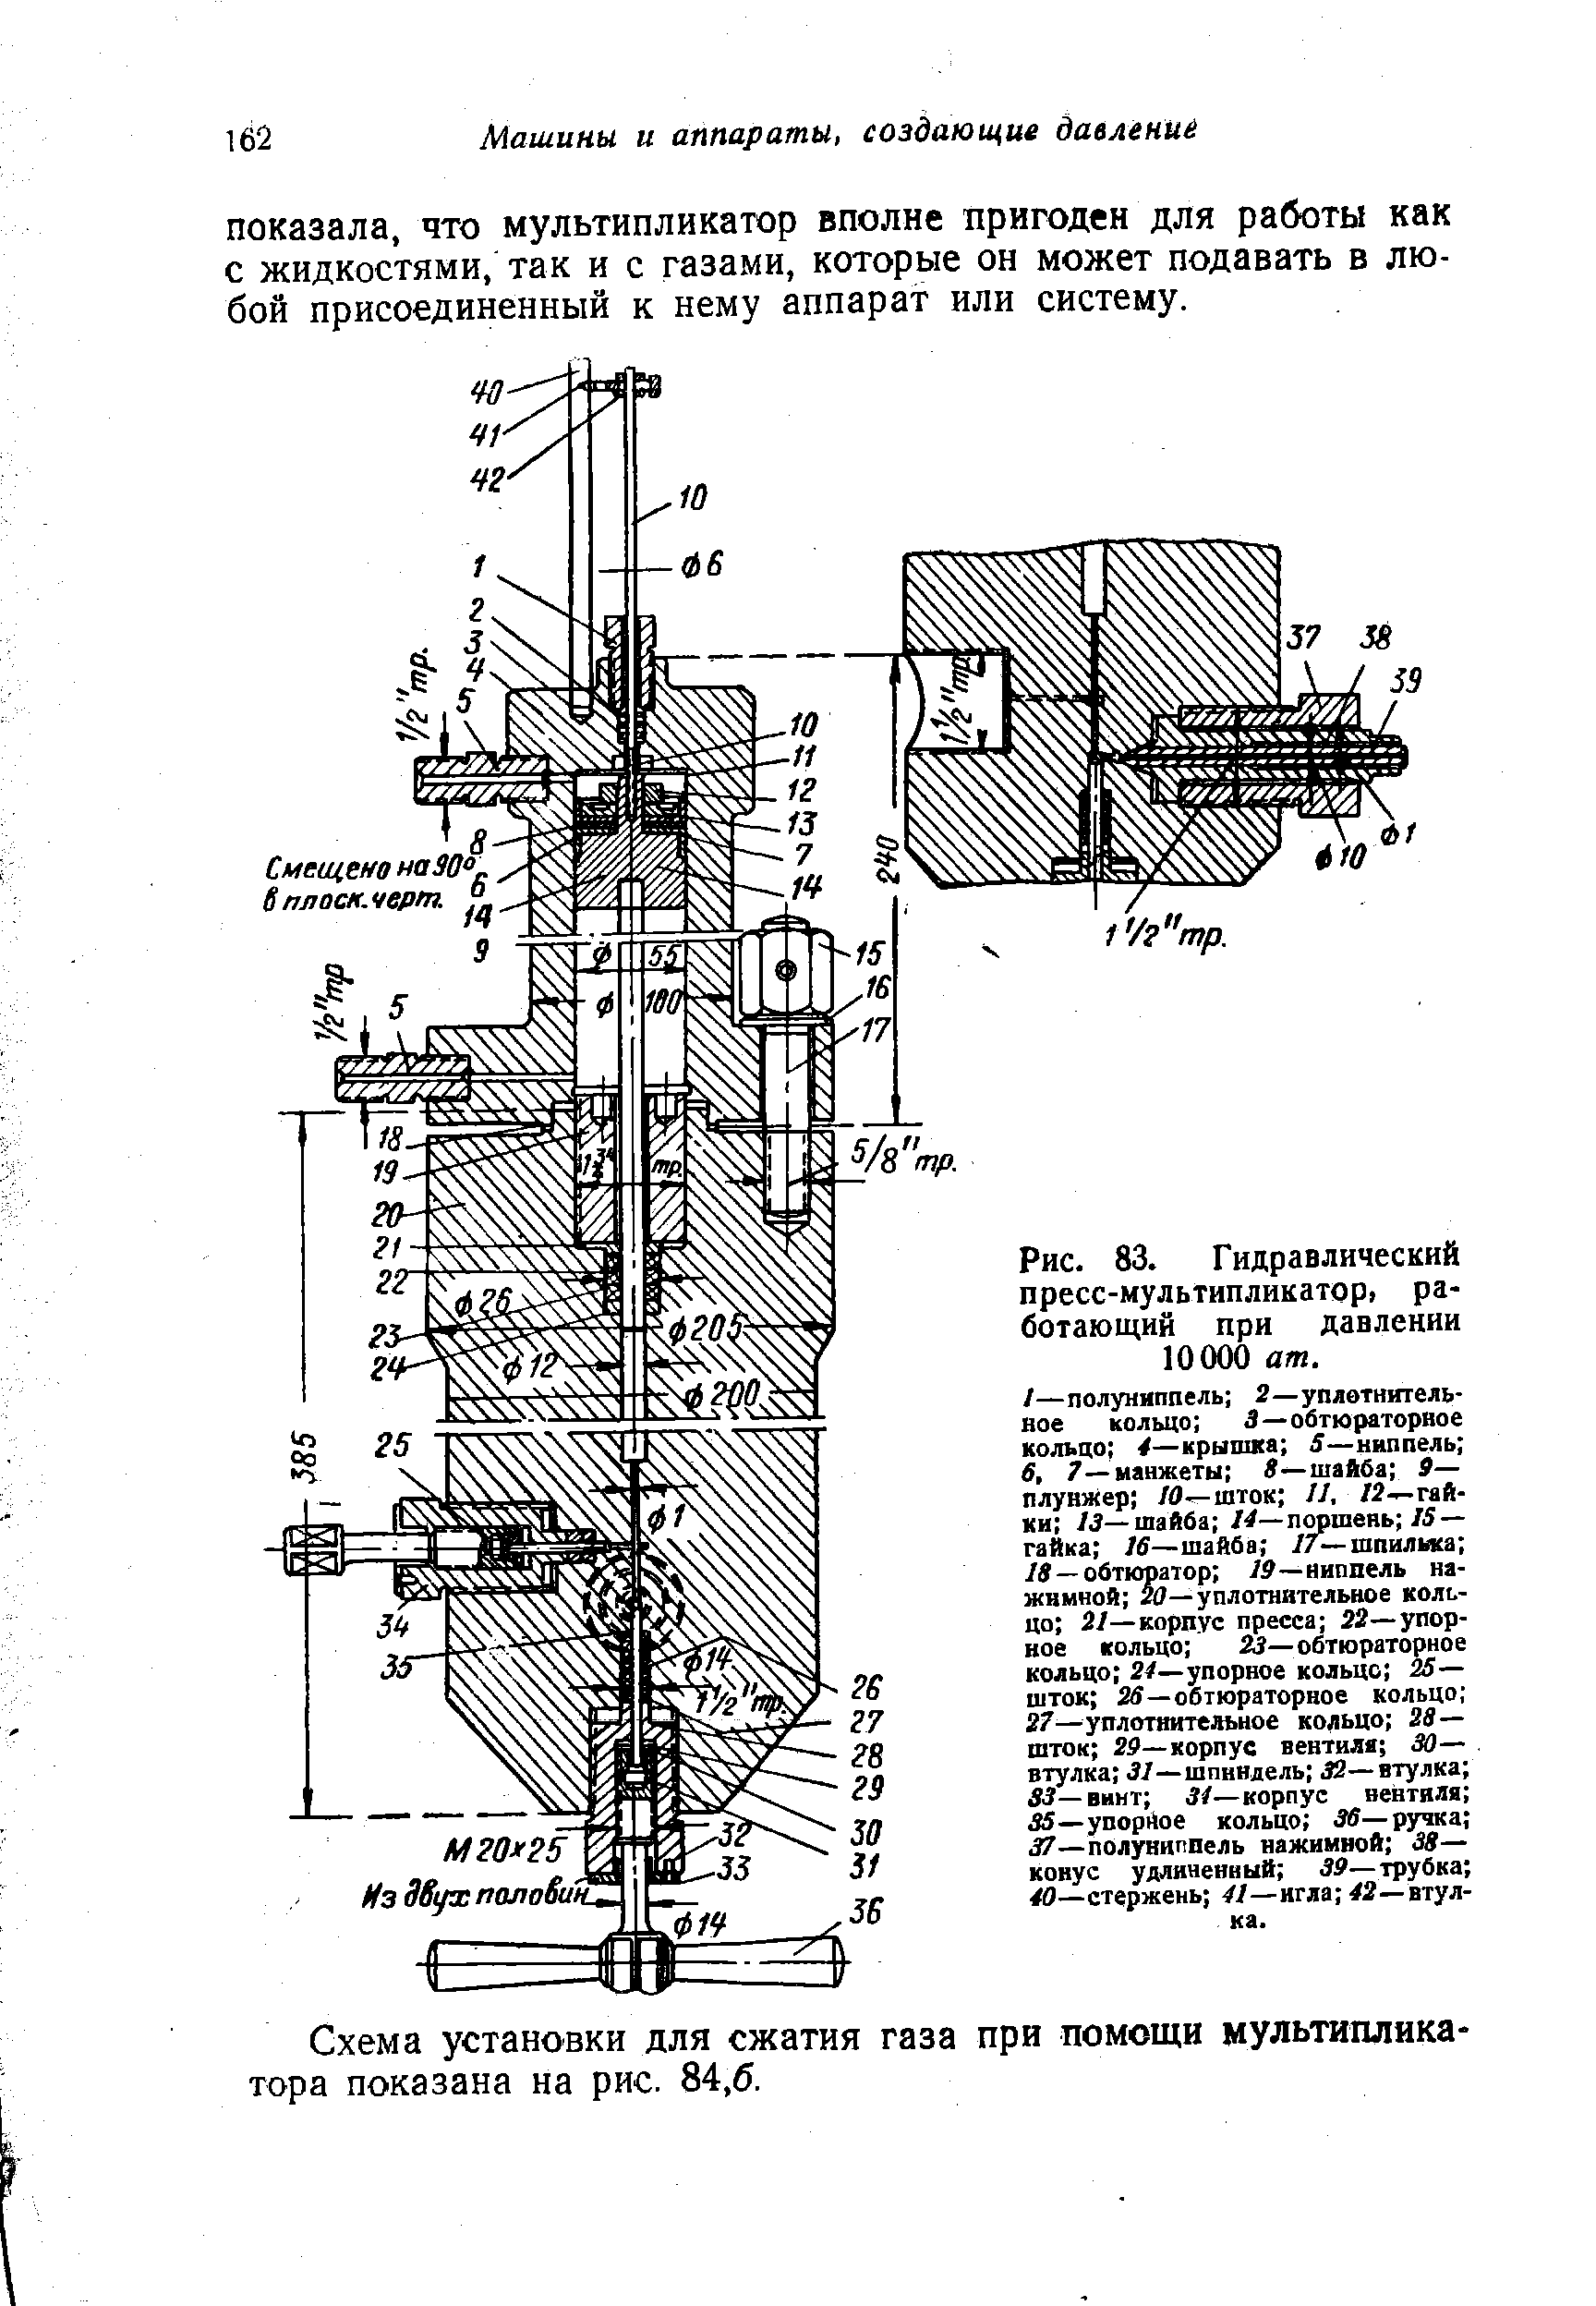 Схема установки для сжатия газа при помощи мультипликатора показана на рис. 84,6.